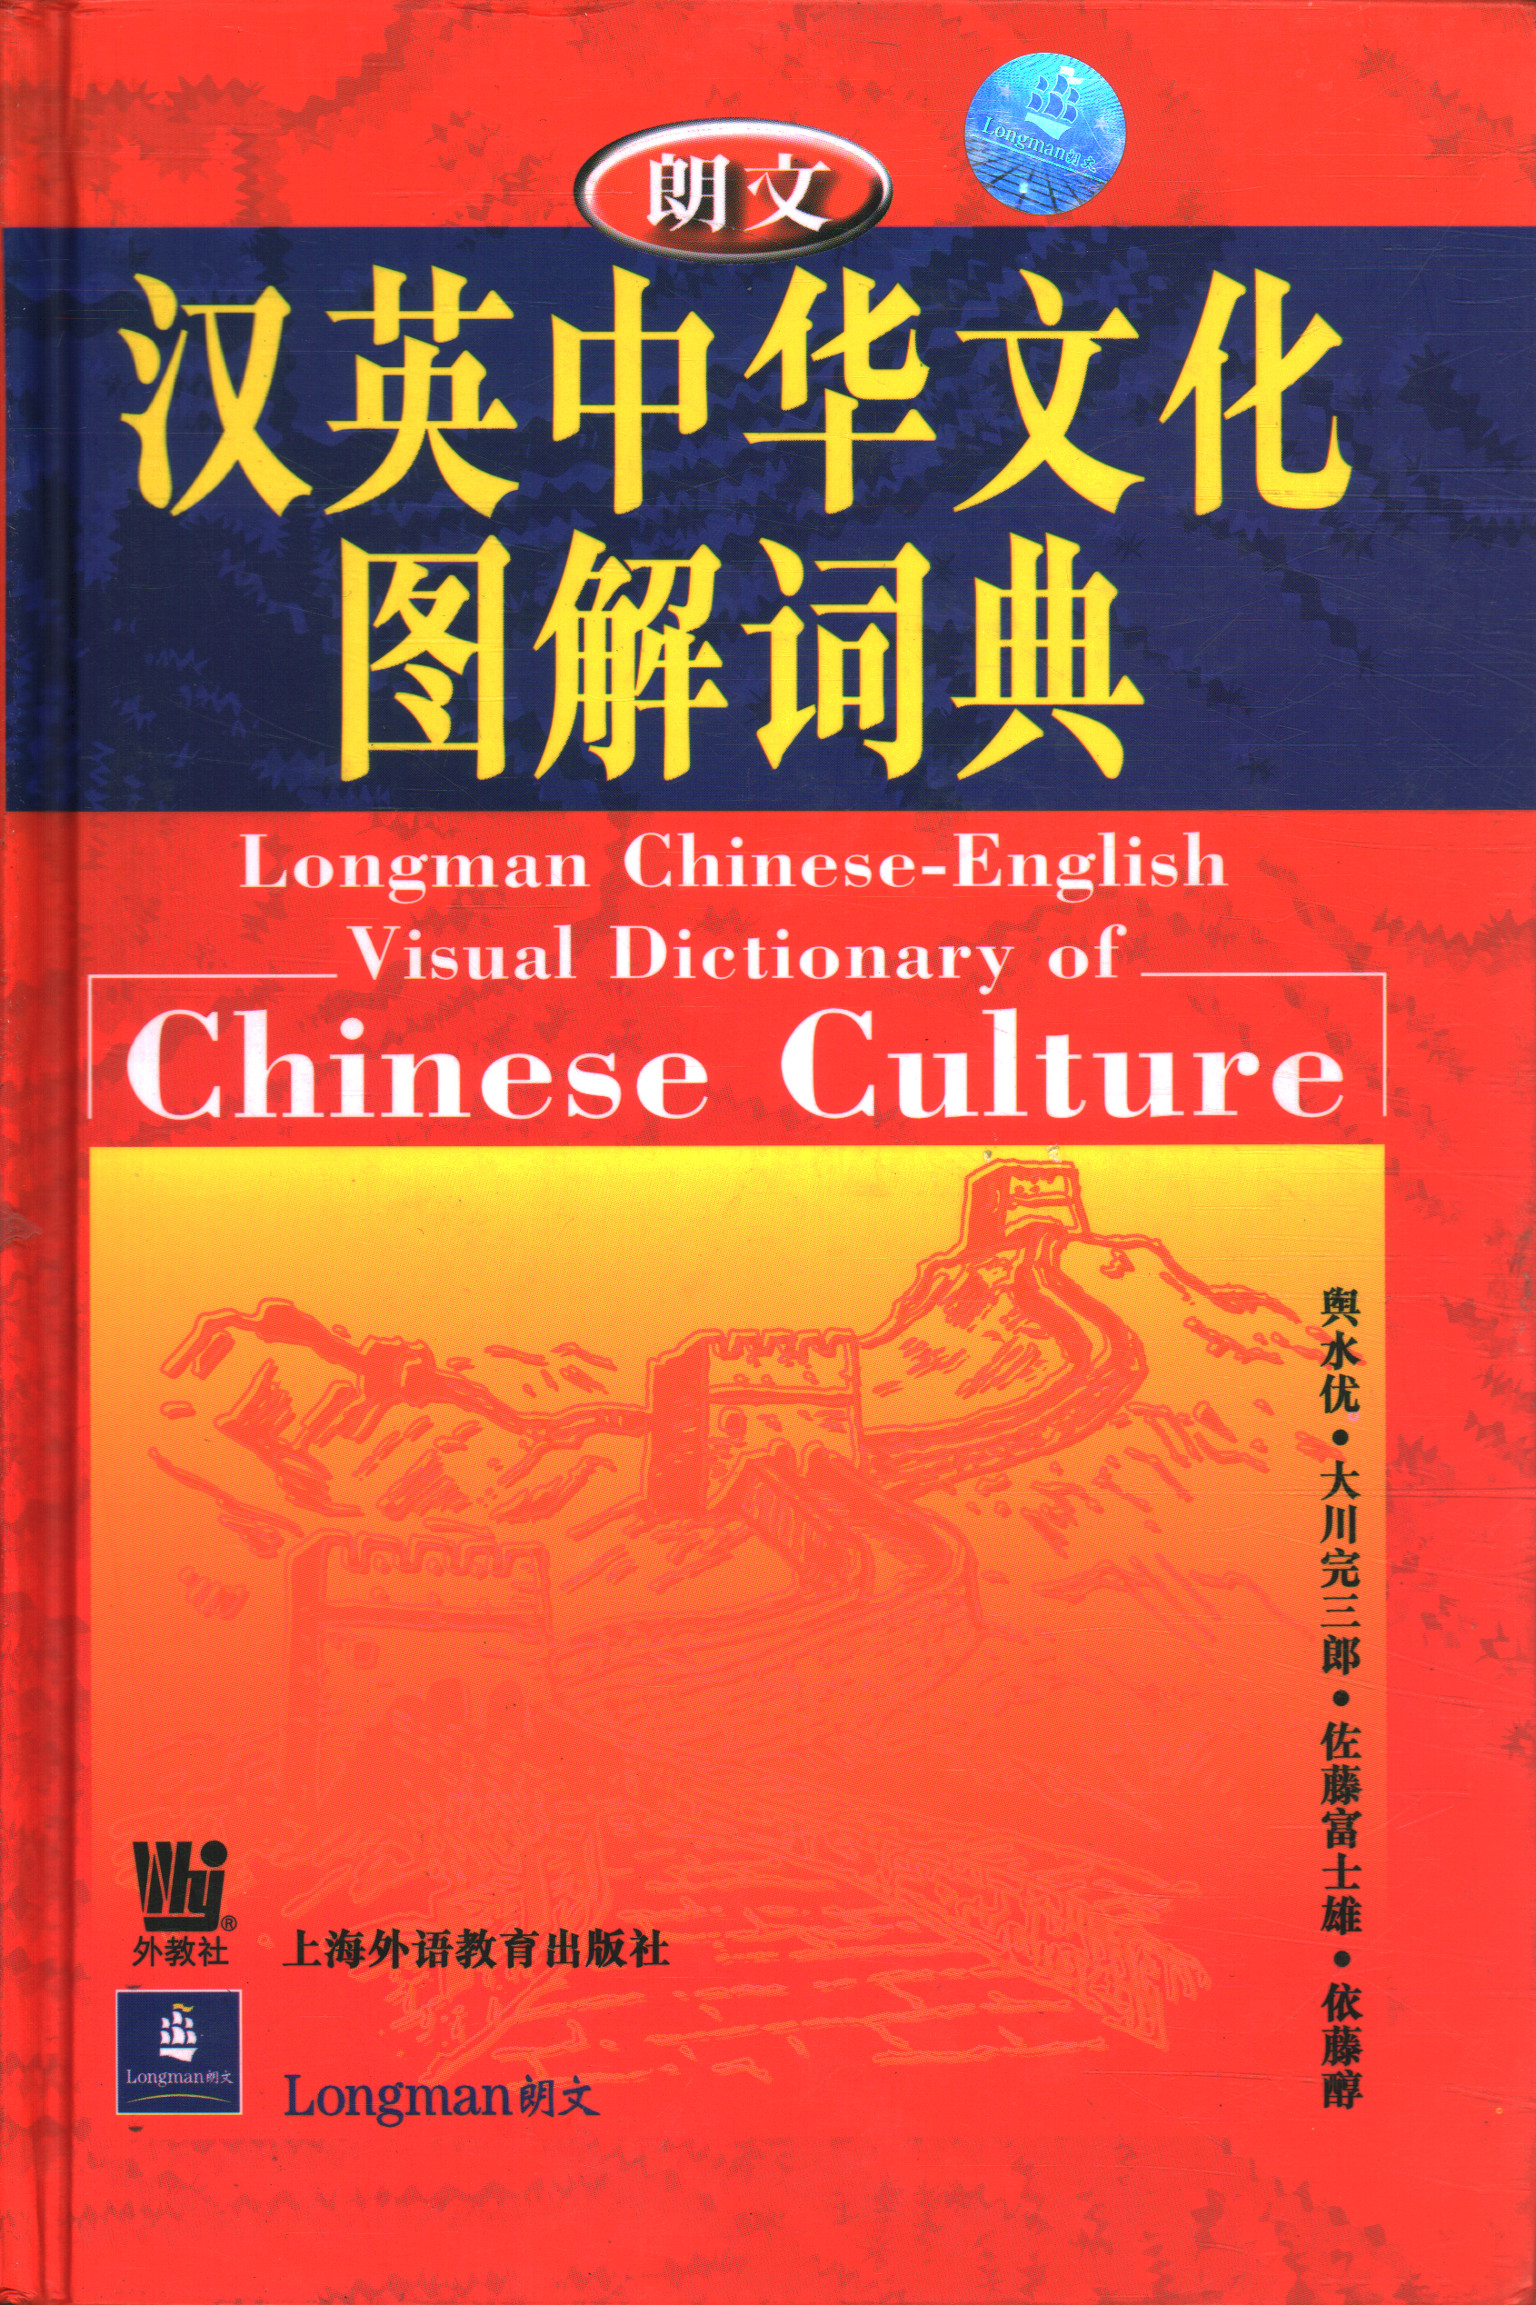 Diccionario visual chino-inglés de Longman